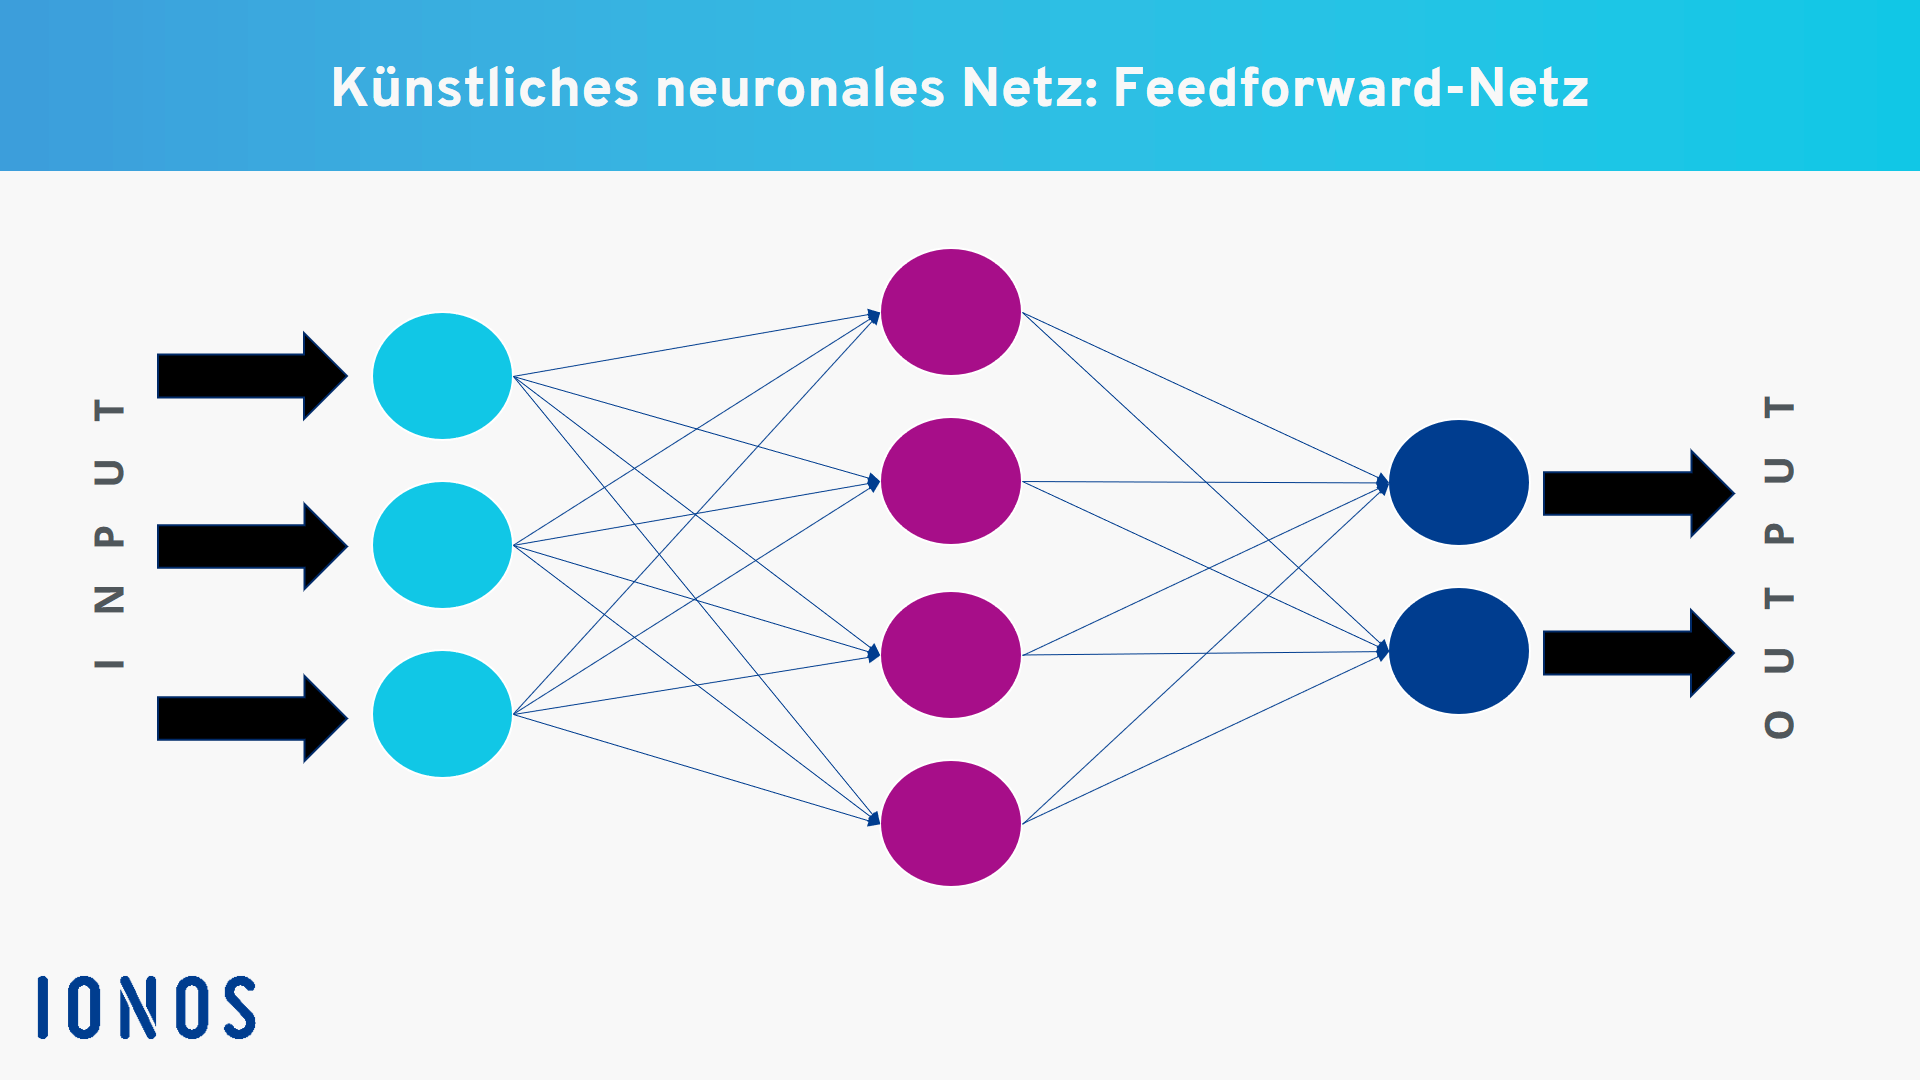 Beispiel für ein künstliches neuronales Feedforward-Netz mit einem Hidden Layer